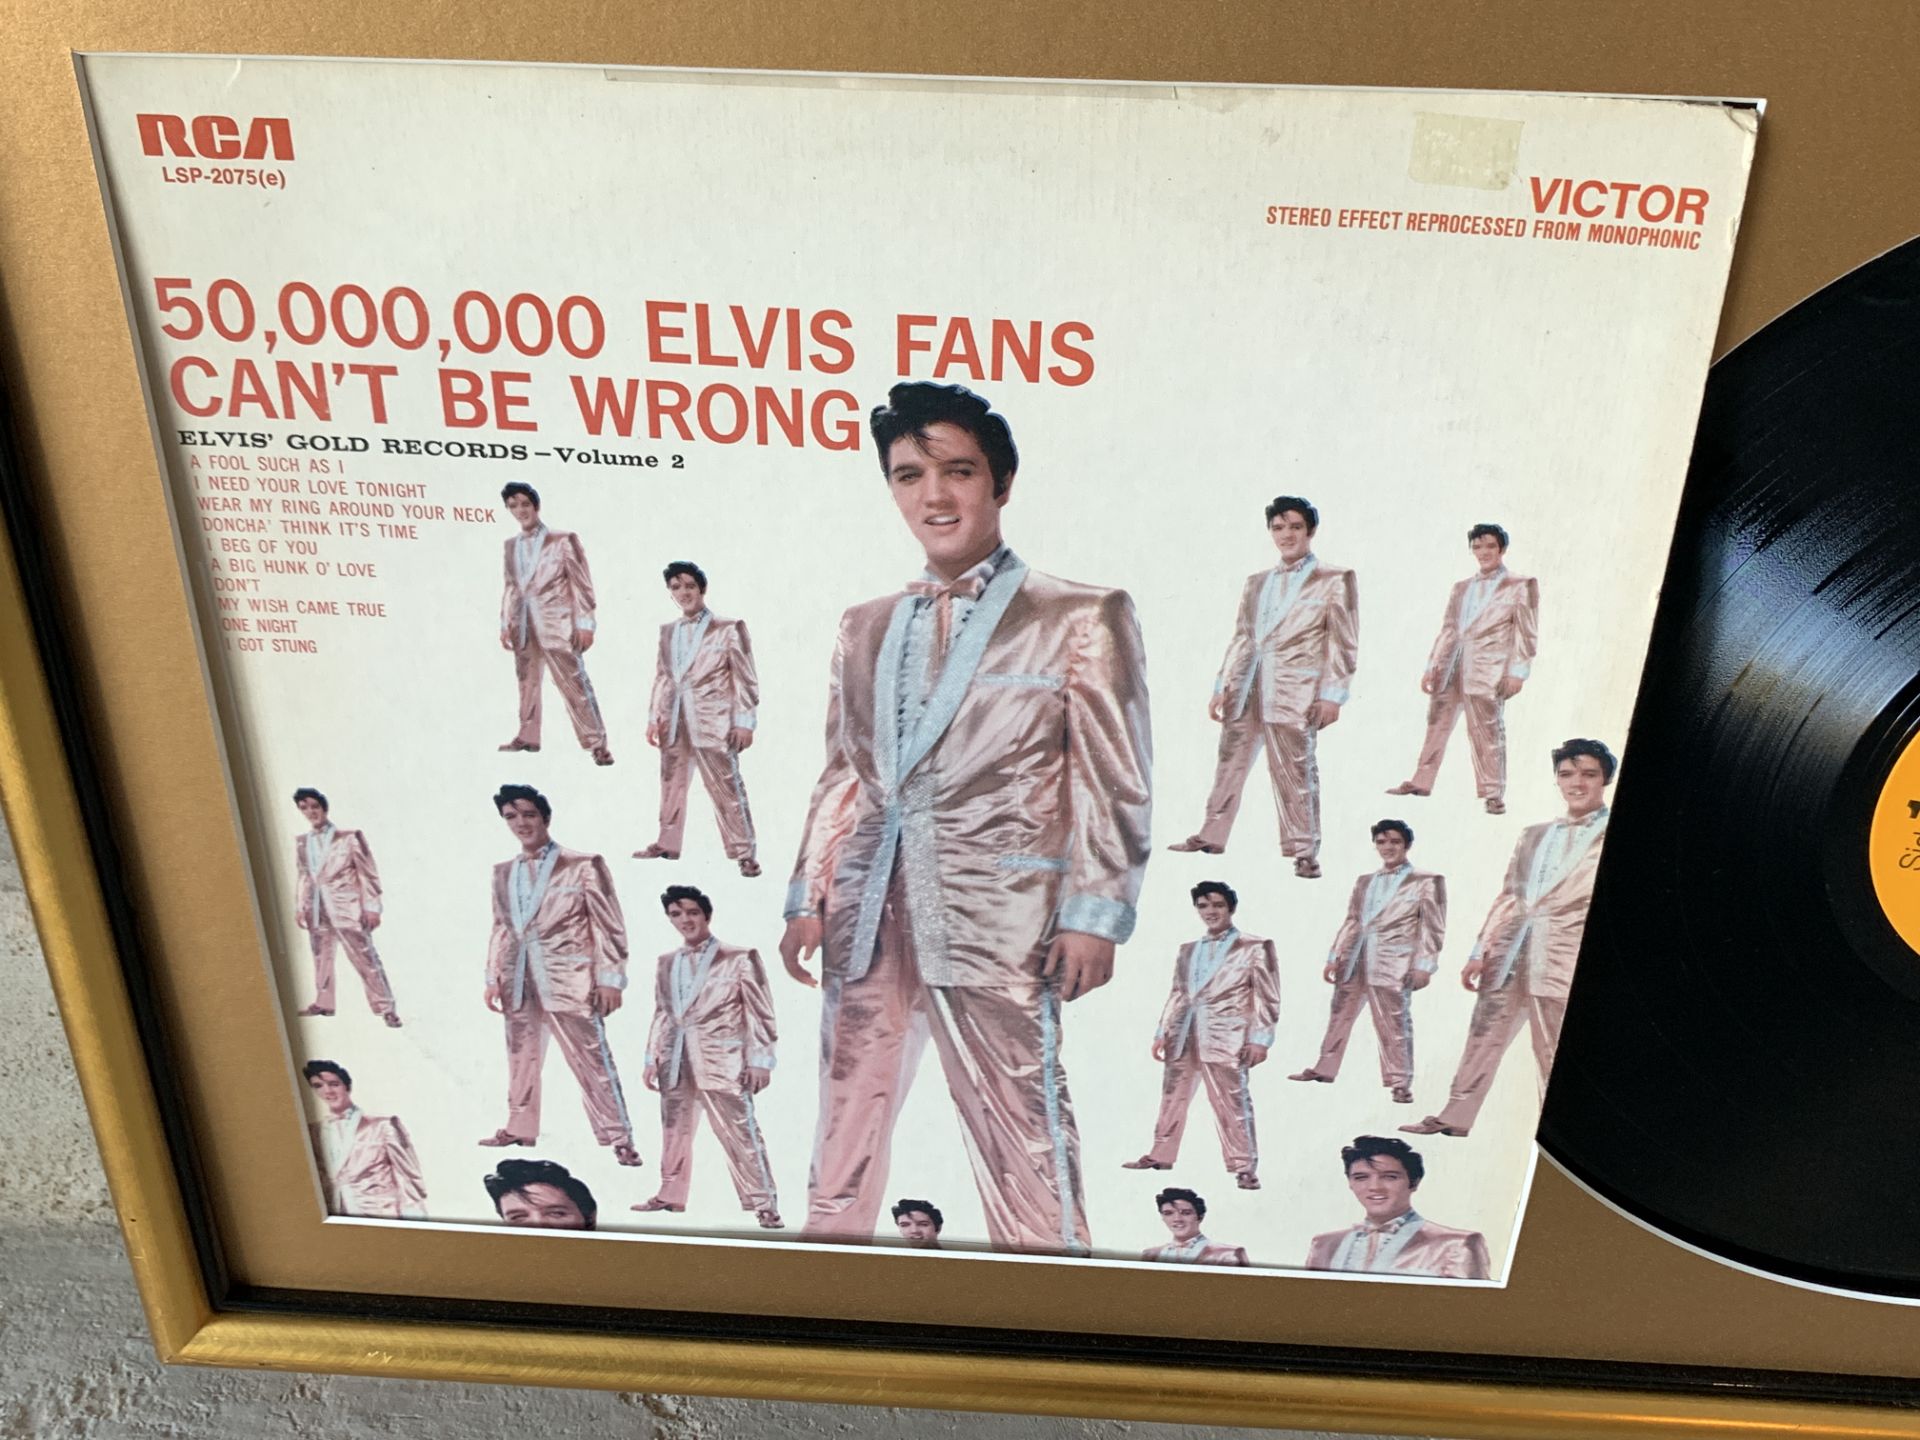 Vintage Elvis Framed Record Display, RCA, Elvis Gold Record Volume 2 - Image 3 of 4